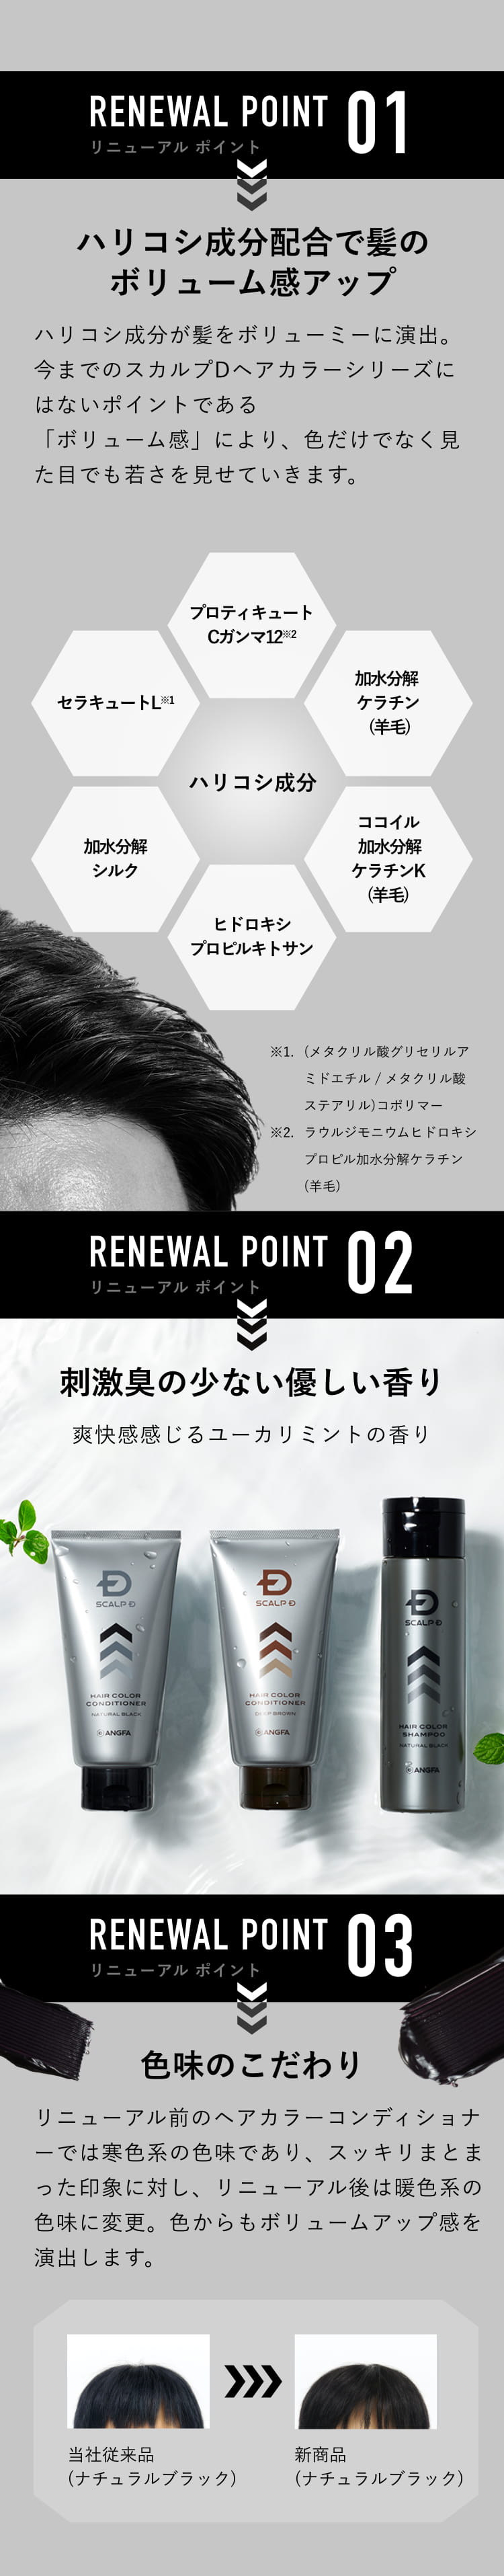 RENEWAL POINT 01：ハリコシ成分配合で髪のボリューム感アップ / RENEWAL POINT 02：刺激臭の少ない優しい香り / RENEWAL POINT 03：色味のこだわり